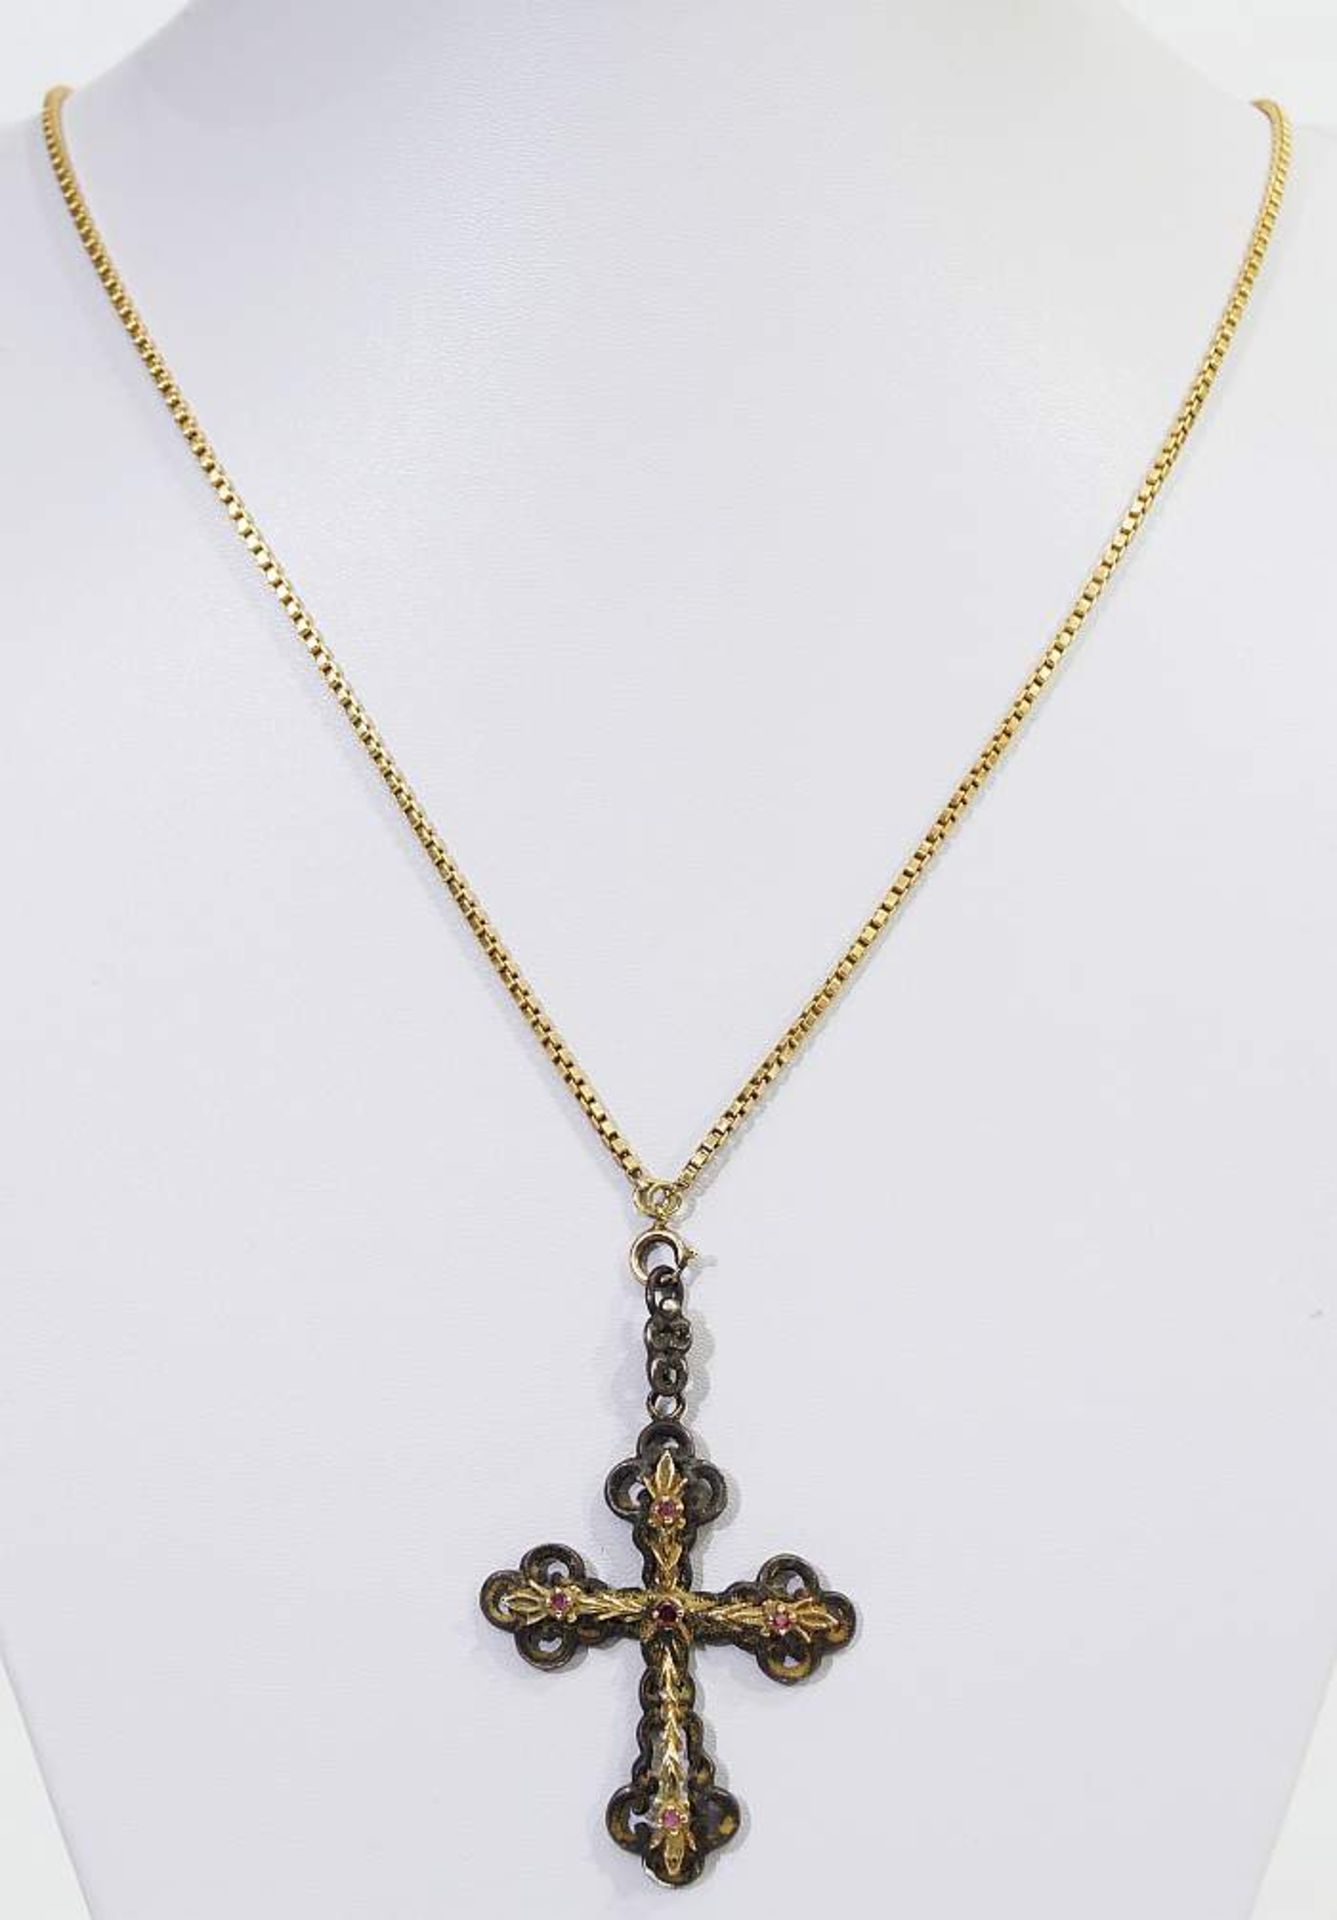 Kreuzanhänger mit Kette. Kreuzanhänger mit Kette. Silber/585er Gelbgold. Seitlicher Besatz wohl